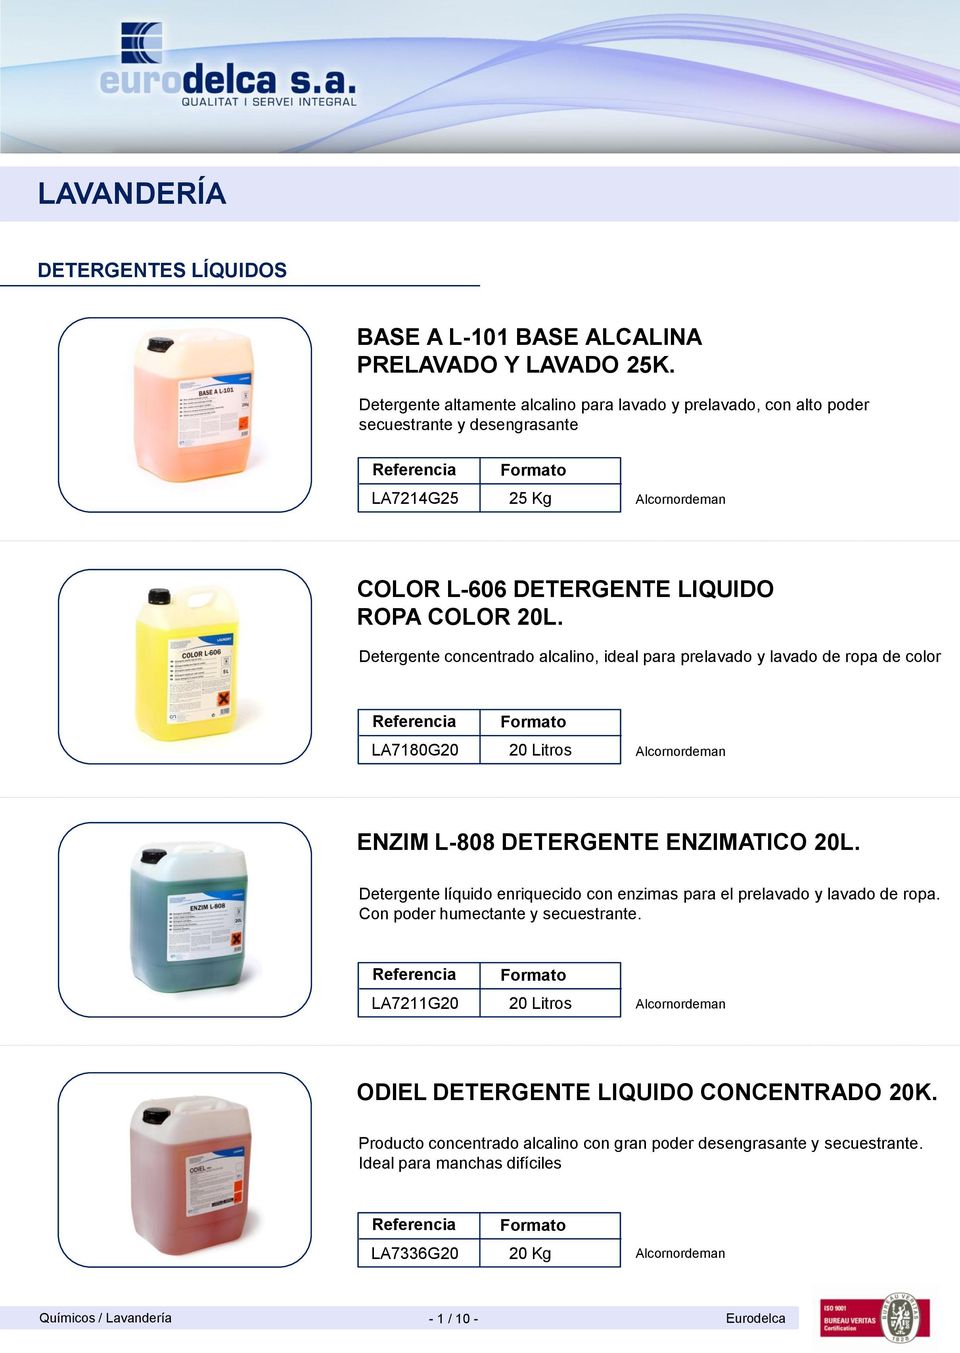 Detergente concentrado alcalino, ideal para prelavado y lavado de ropa de color LA7180G20 20 Litros ENZIM L-808 DETERGENTE ENZIMATICO 20L.